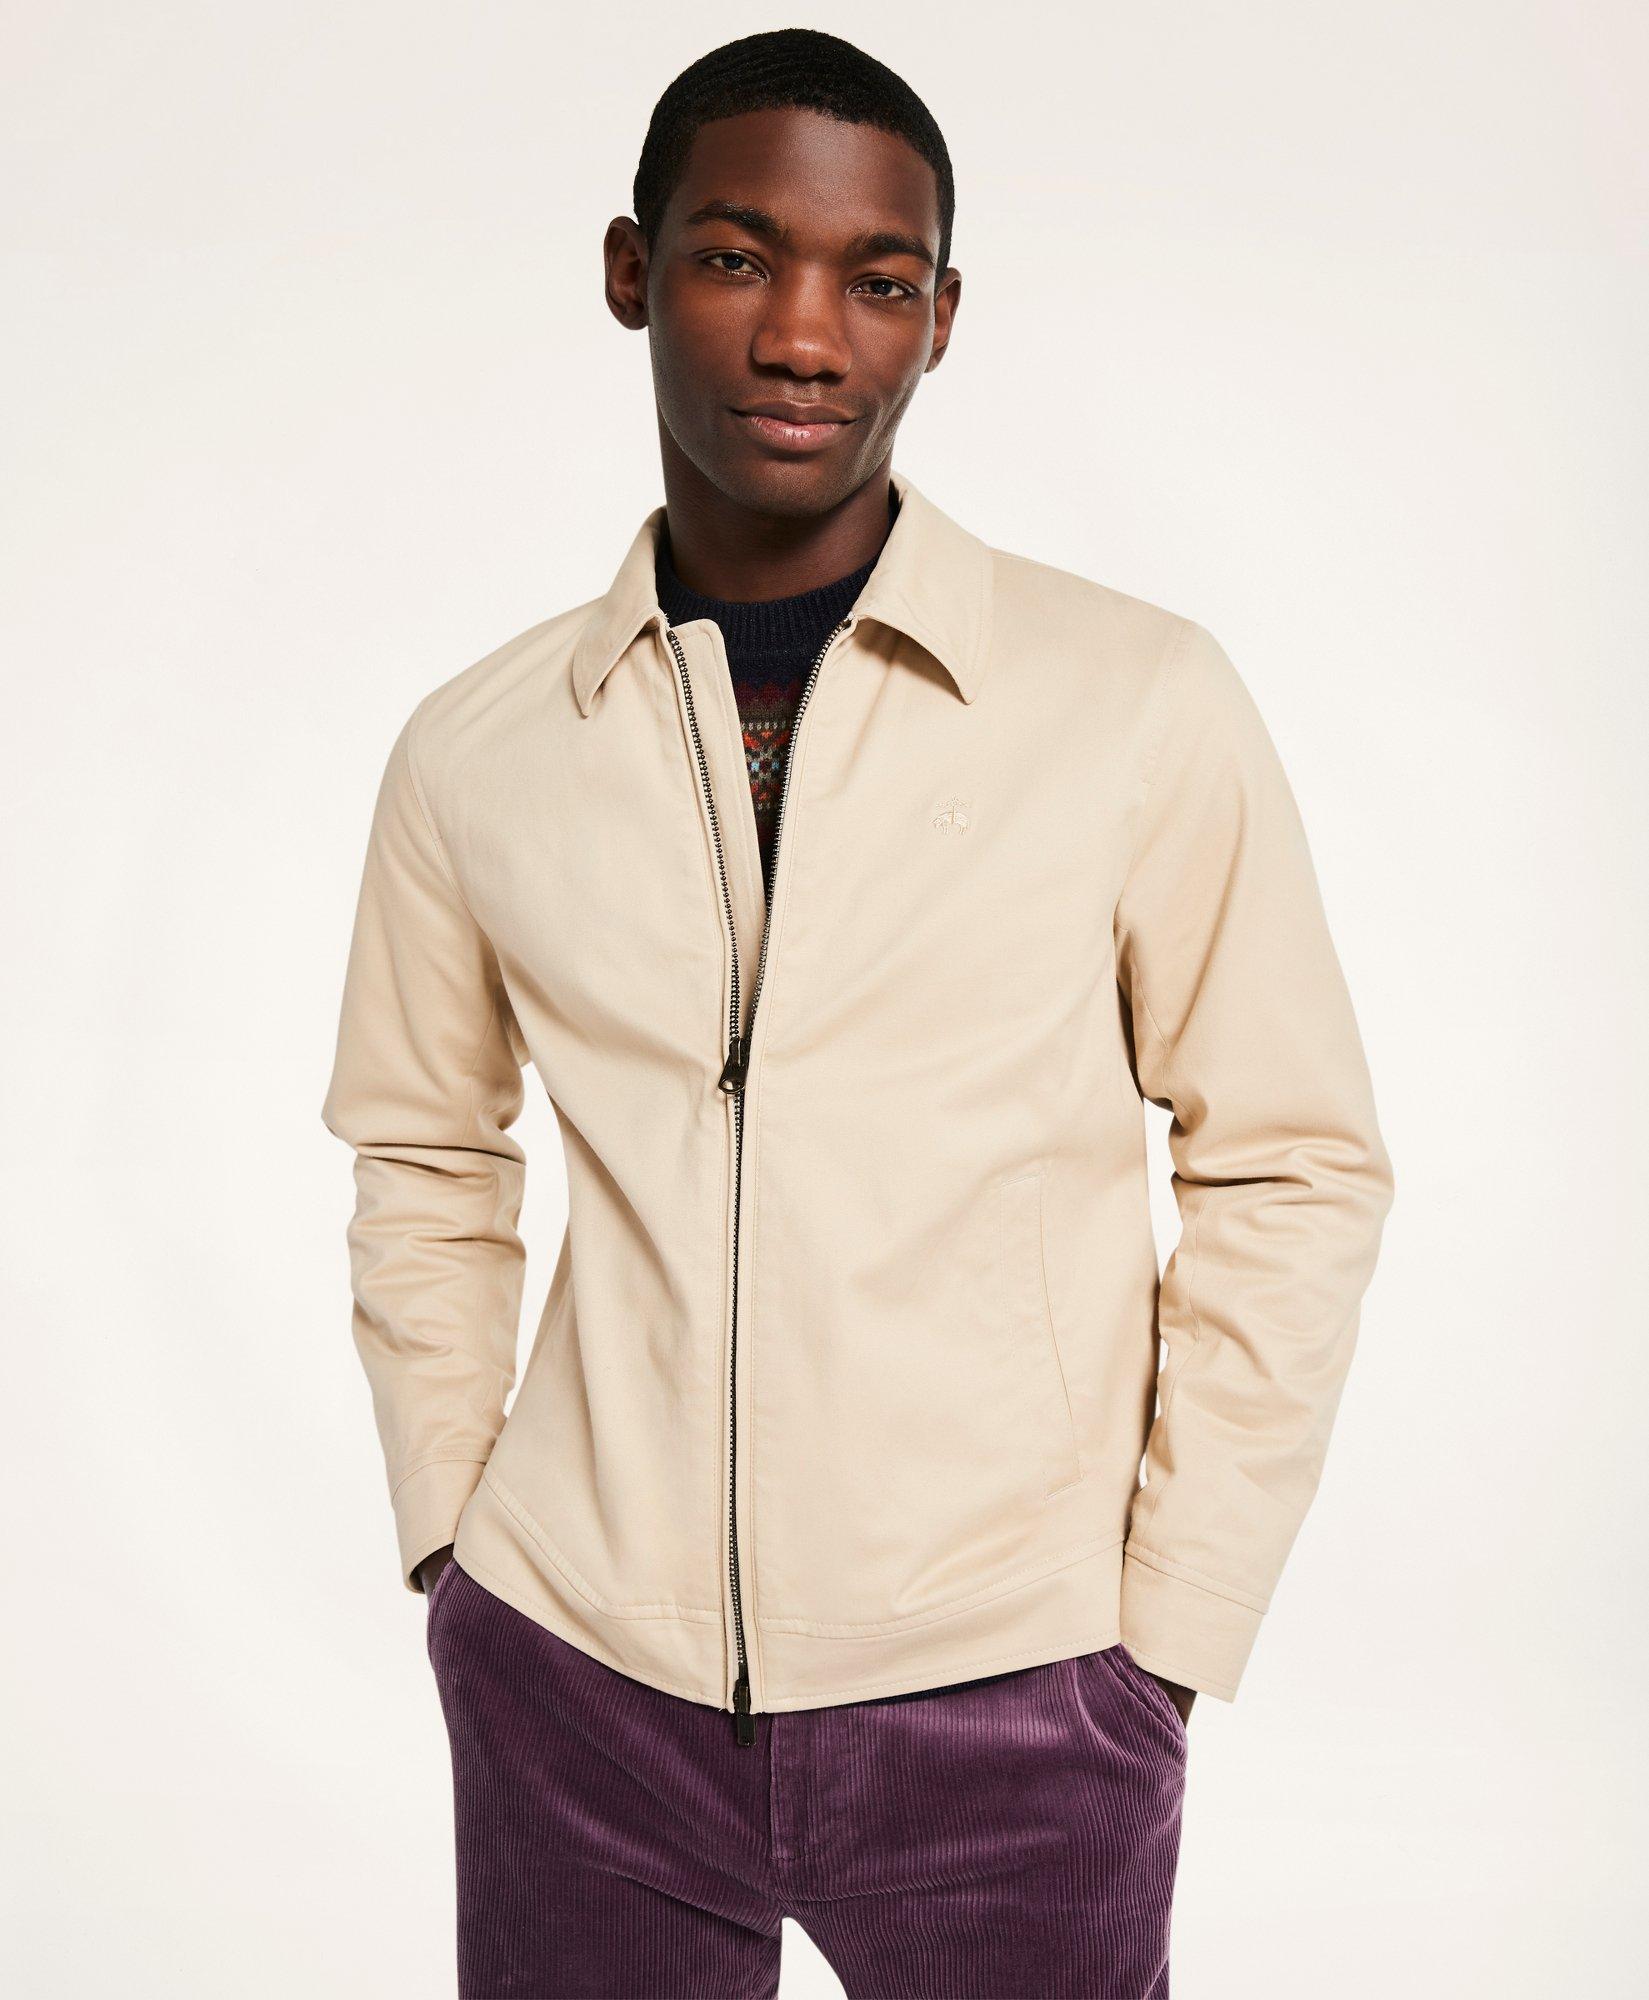 Men's Utility Jacket, Tan Cotton Twill